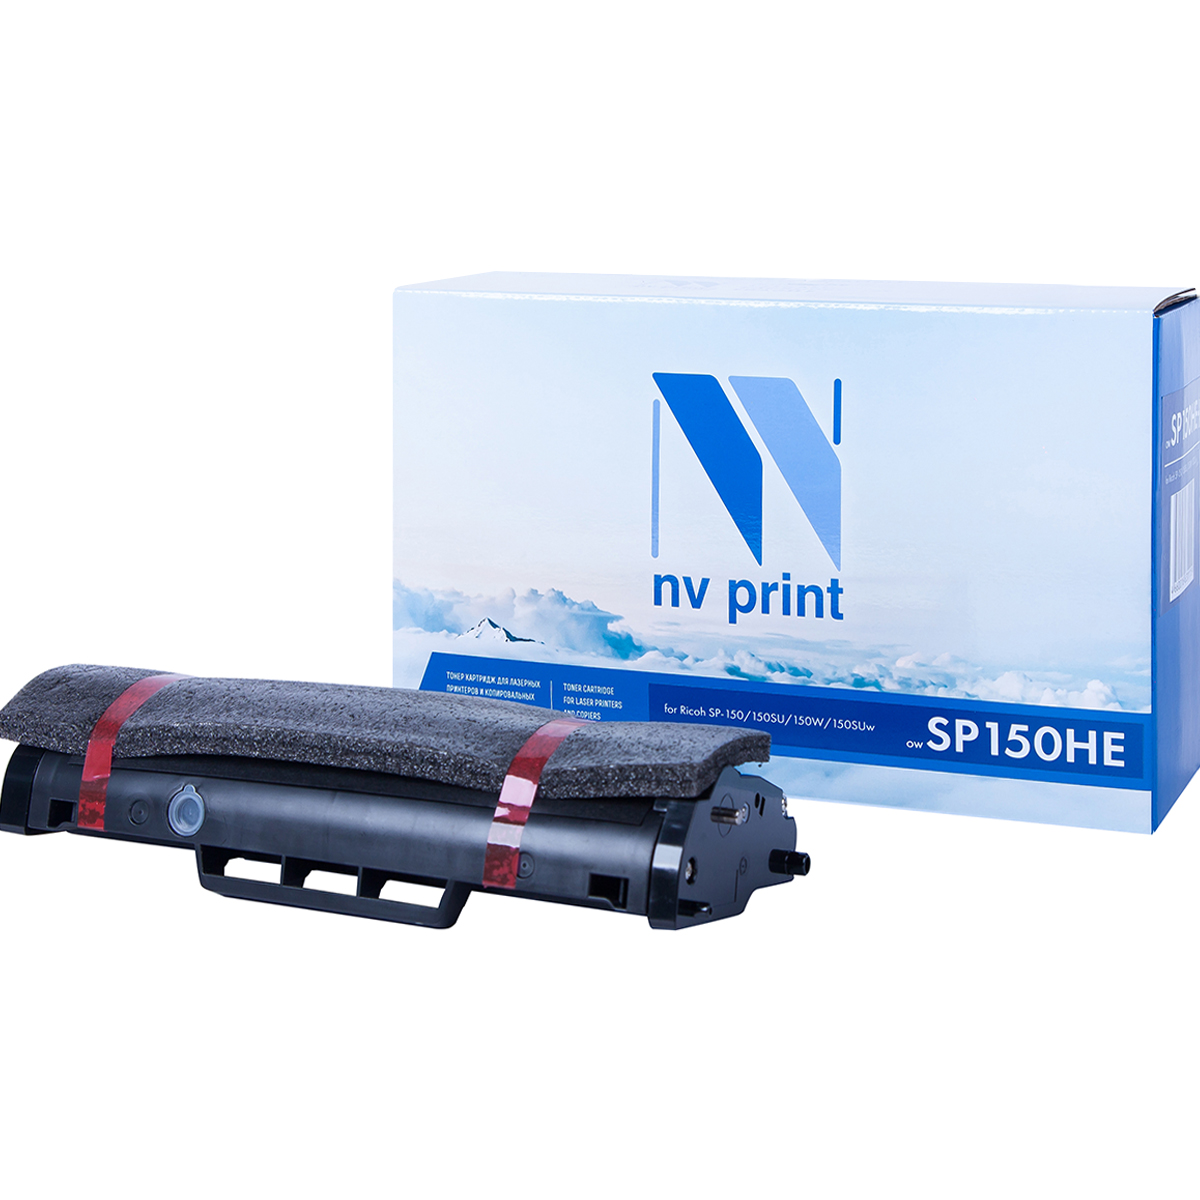 Тонер-картридж NV Print SP150HE для Ricoh SP-150/150SU/150W/150SUw (1500k) тонер картридж nv print sp110e для ricoh sp 111 111sf 111su 2000k